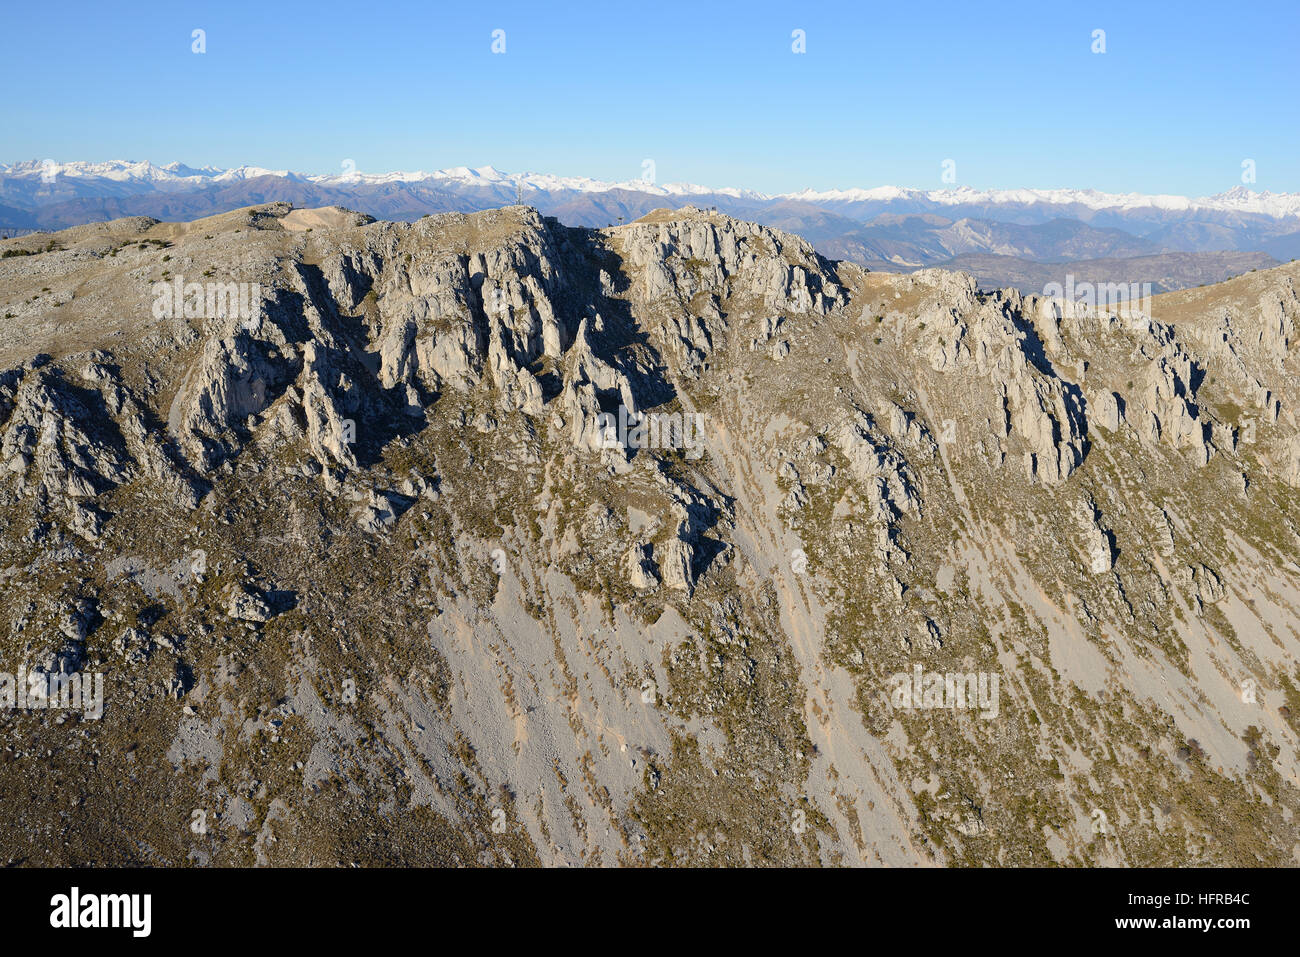 VUE AÉRIENNE. Face escarpée du cime du Cheiron au sud en décembre, les Alpes du Mercantour ont bonmé à l'horizon. Gréolières, Alpes-Maritimes, France. Banque D'Images